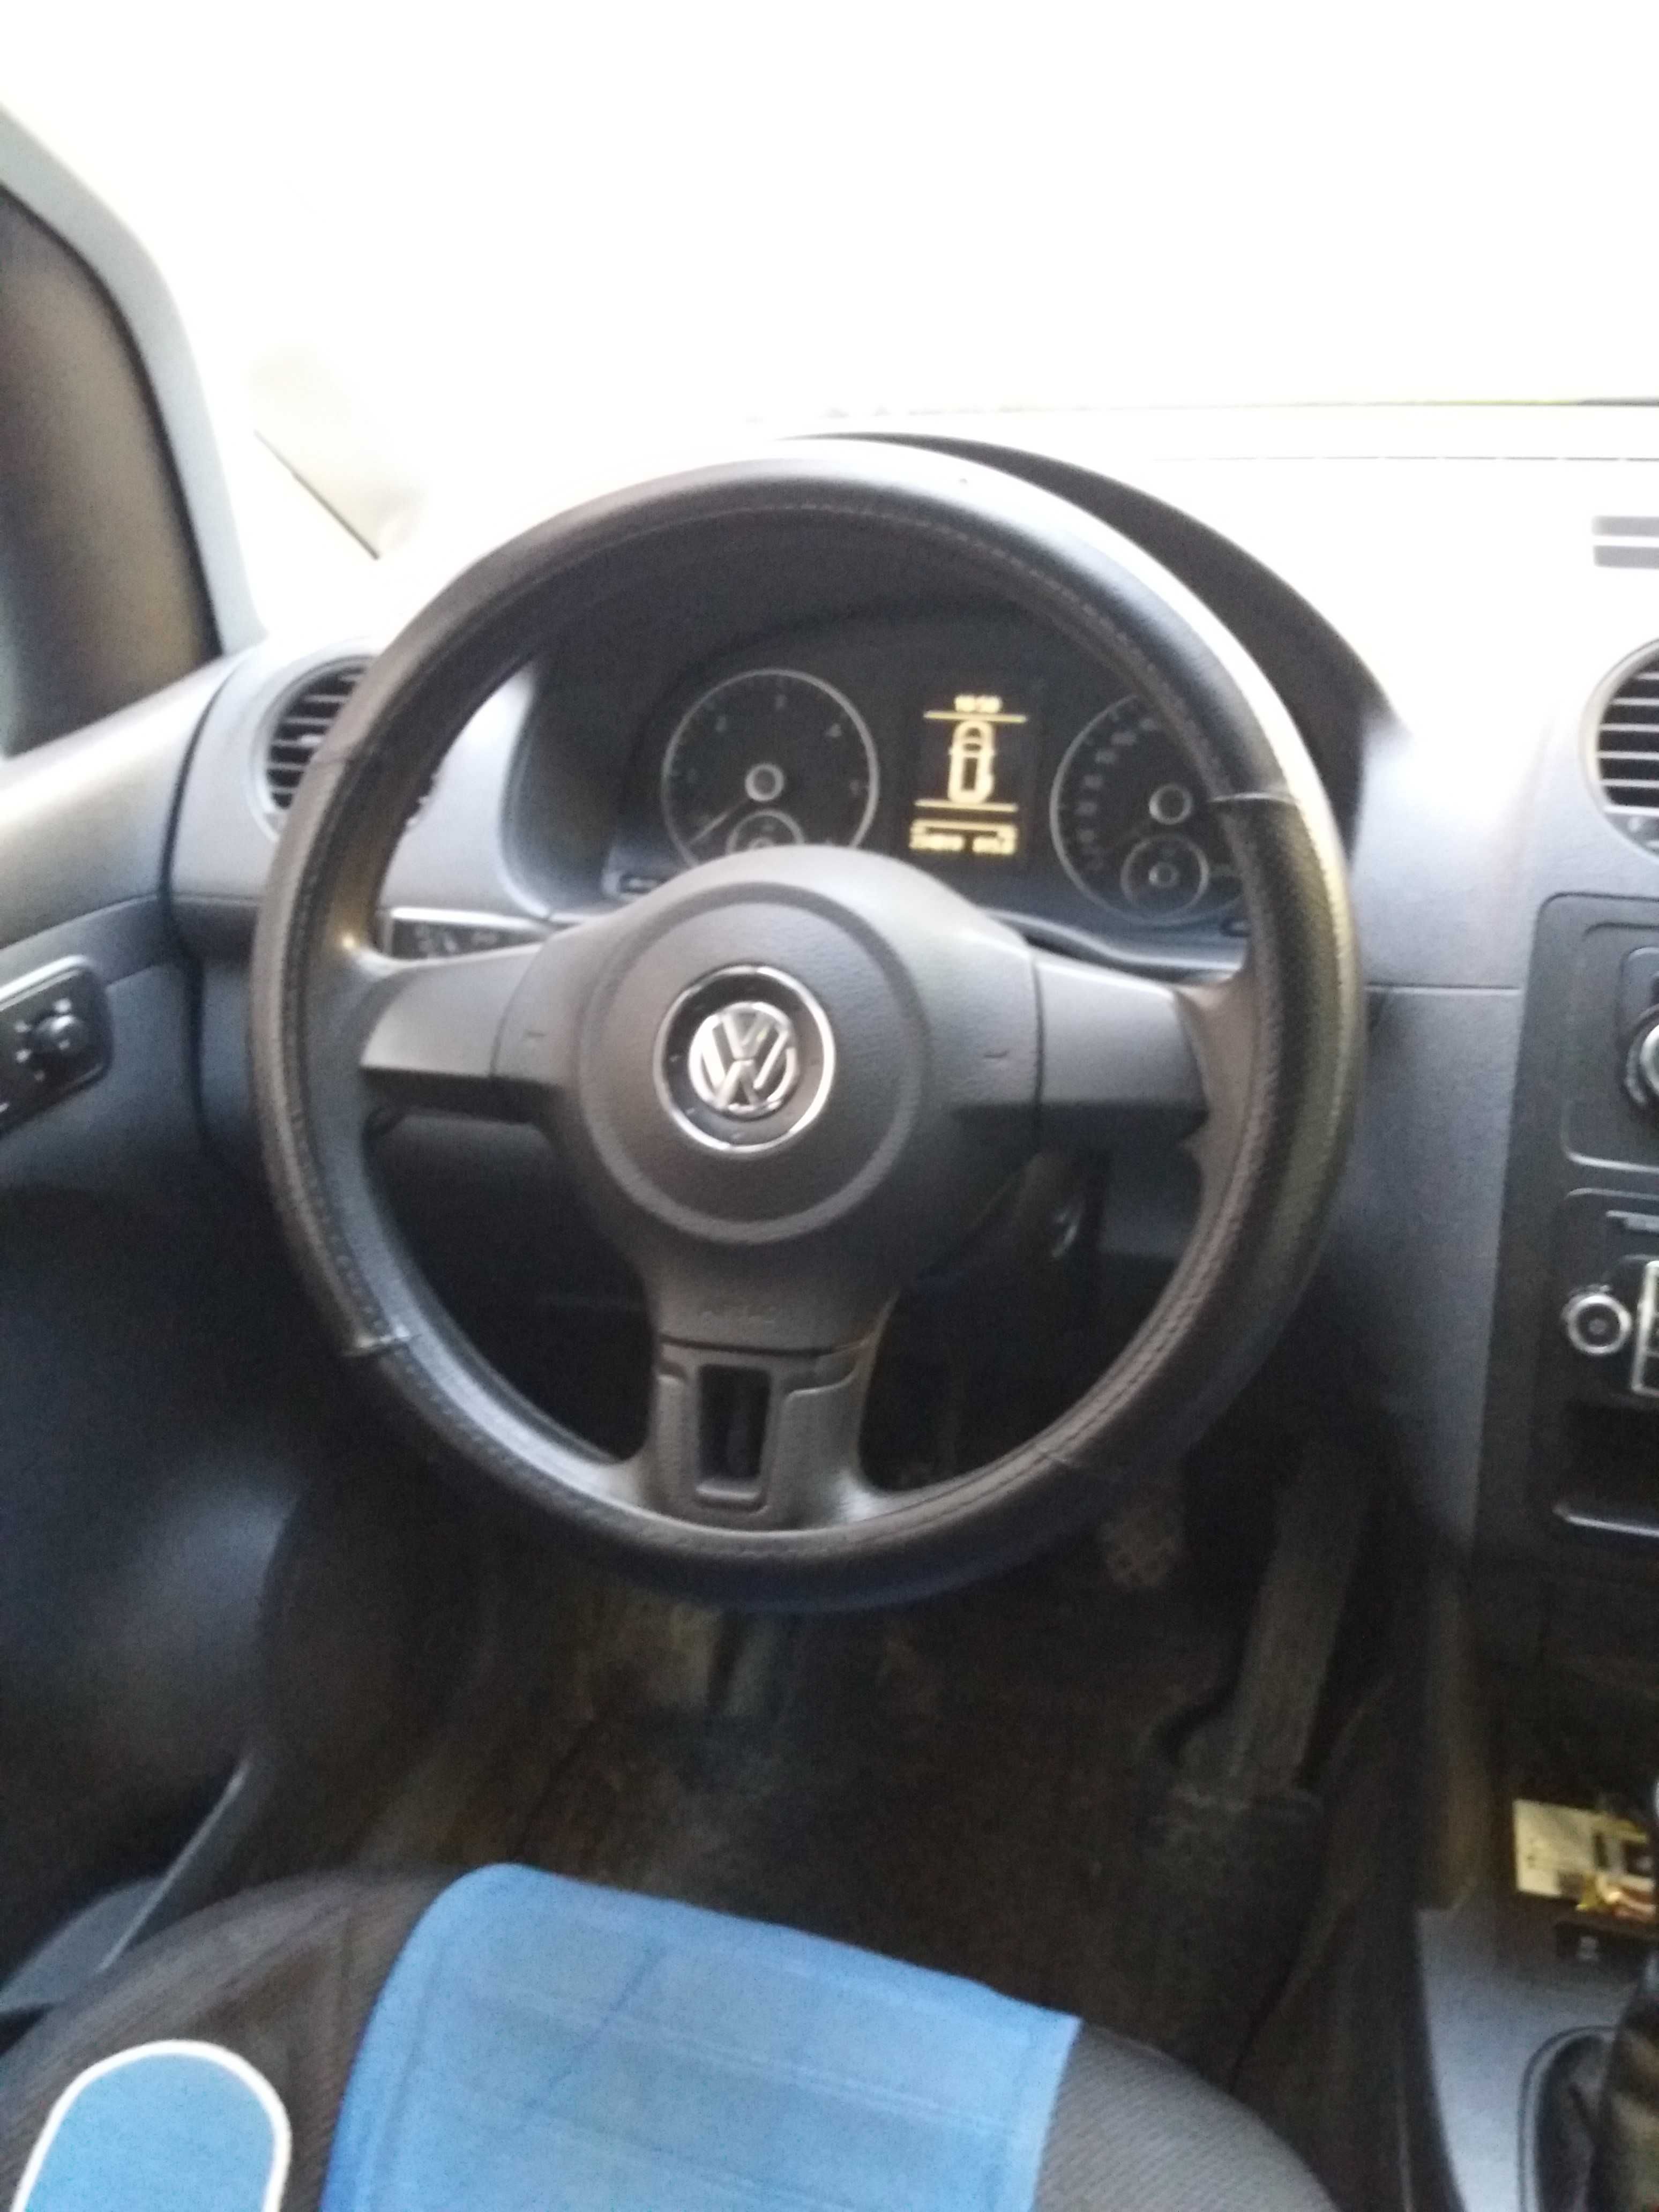 VW Caddy 4Motion